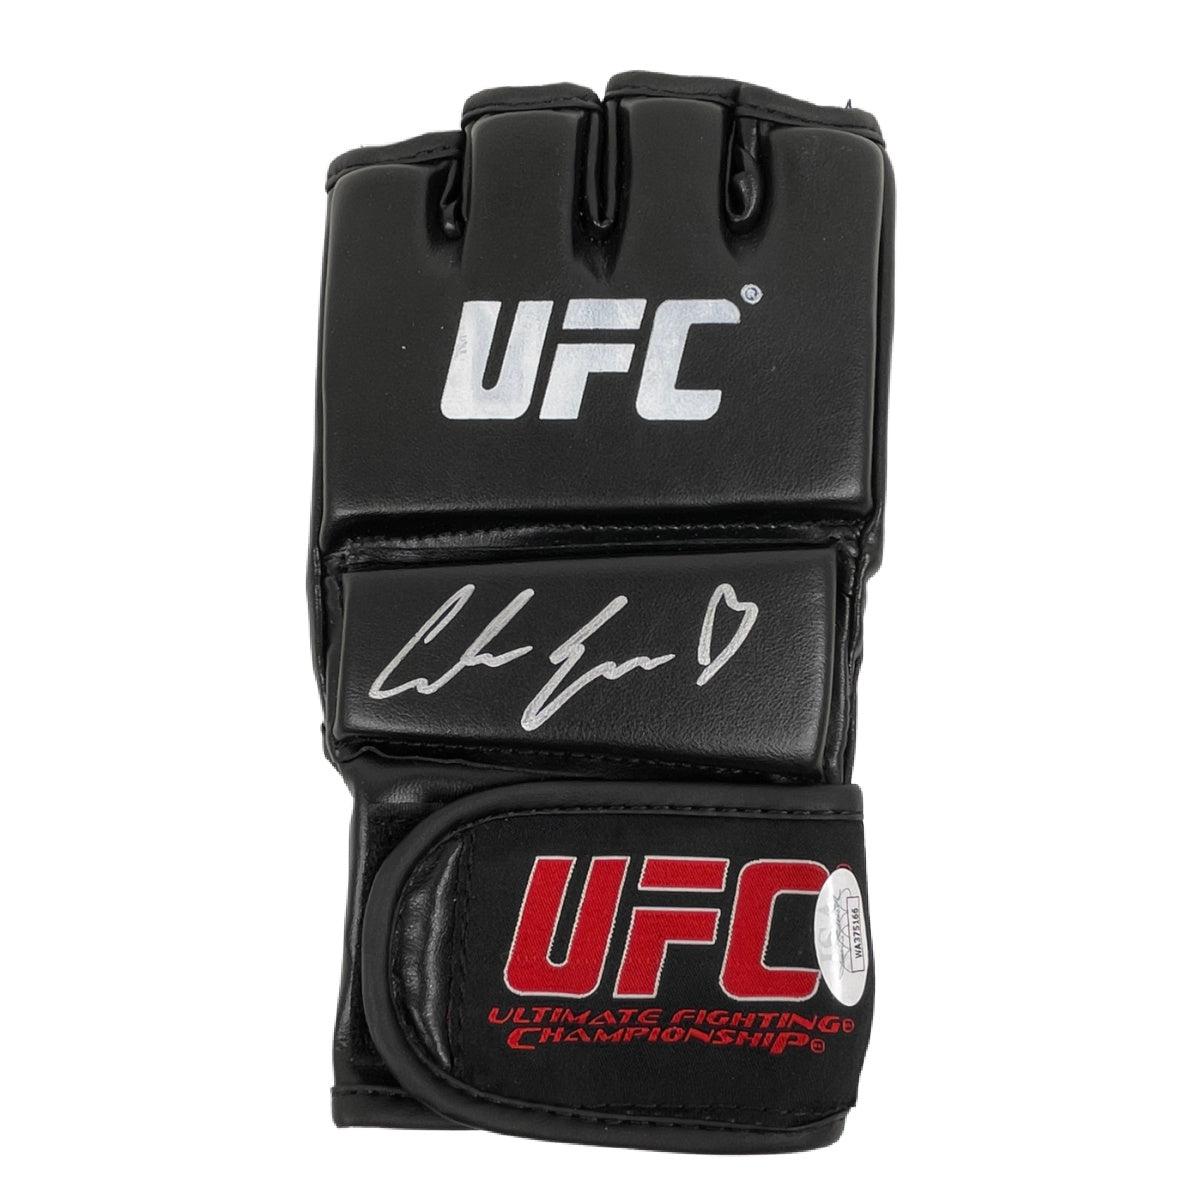 Carla Esparza Signed UFC Trainer Glove Autographed JSA COA